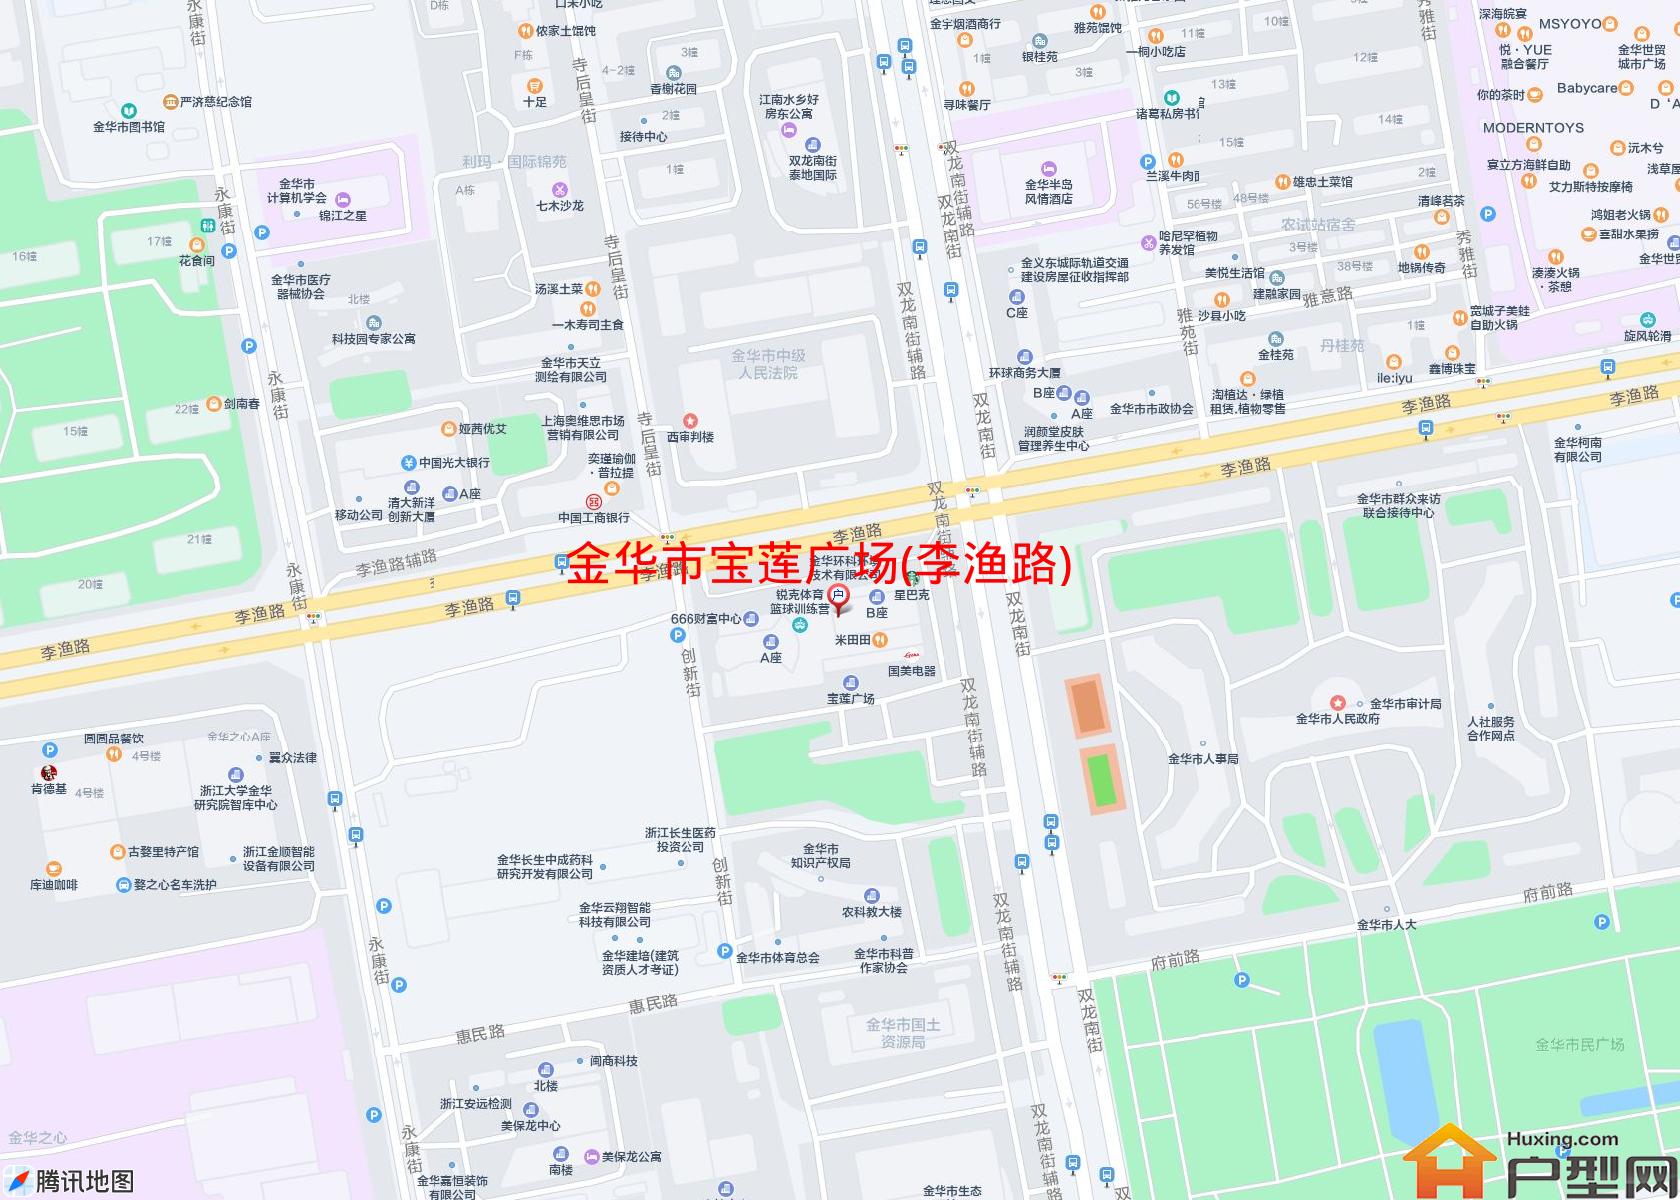 宝莲广场(李渔路)小区 - 户型网